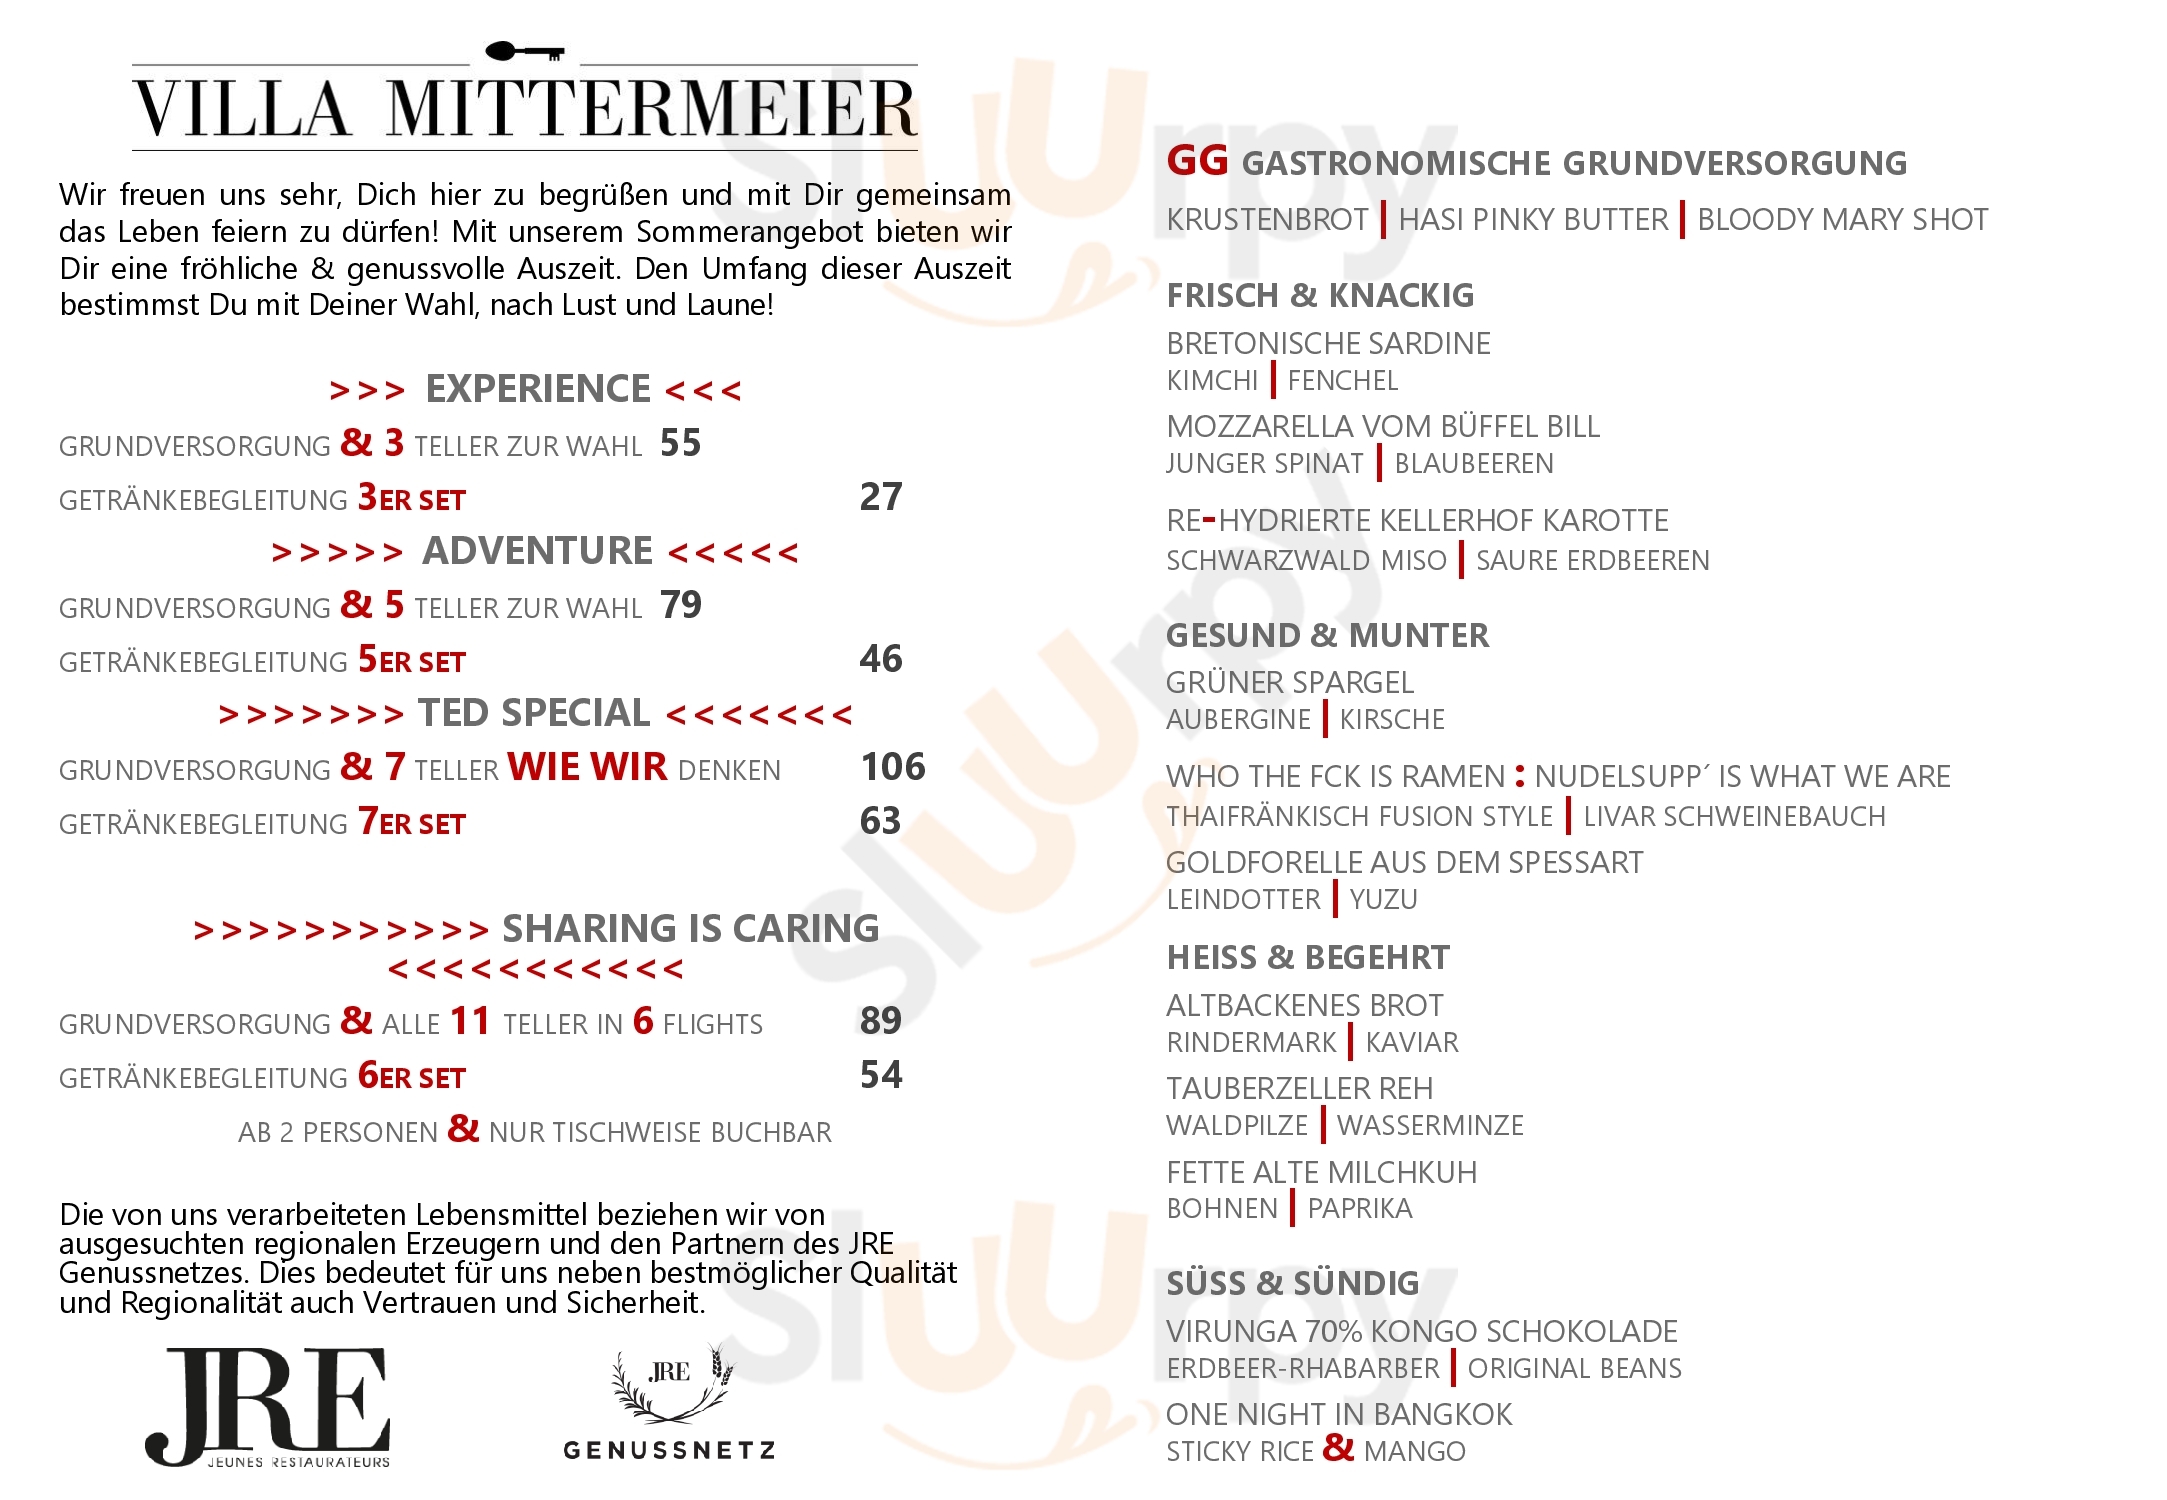 Mittermeier Restaurant & Hotel Rothenburg ob der Tauber Menu - 1